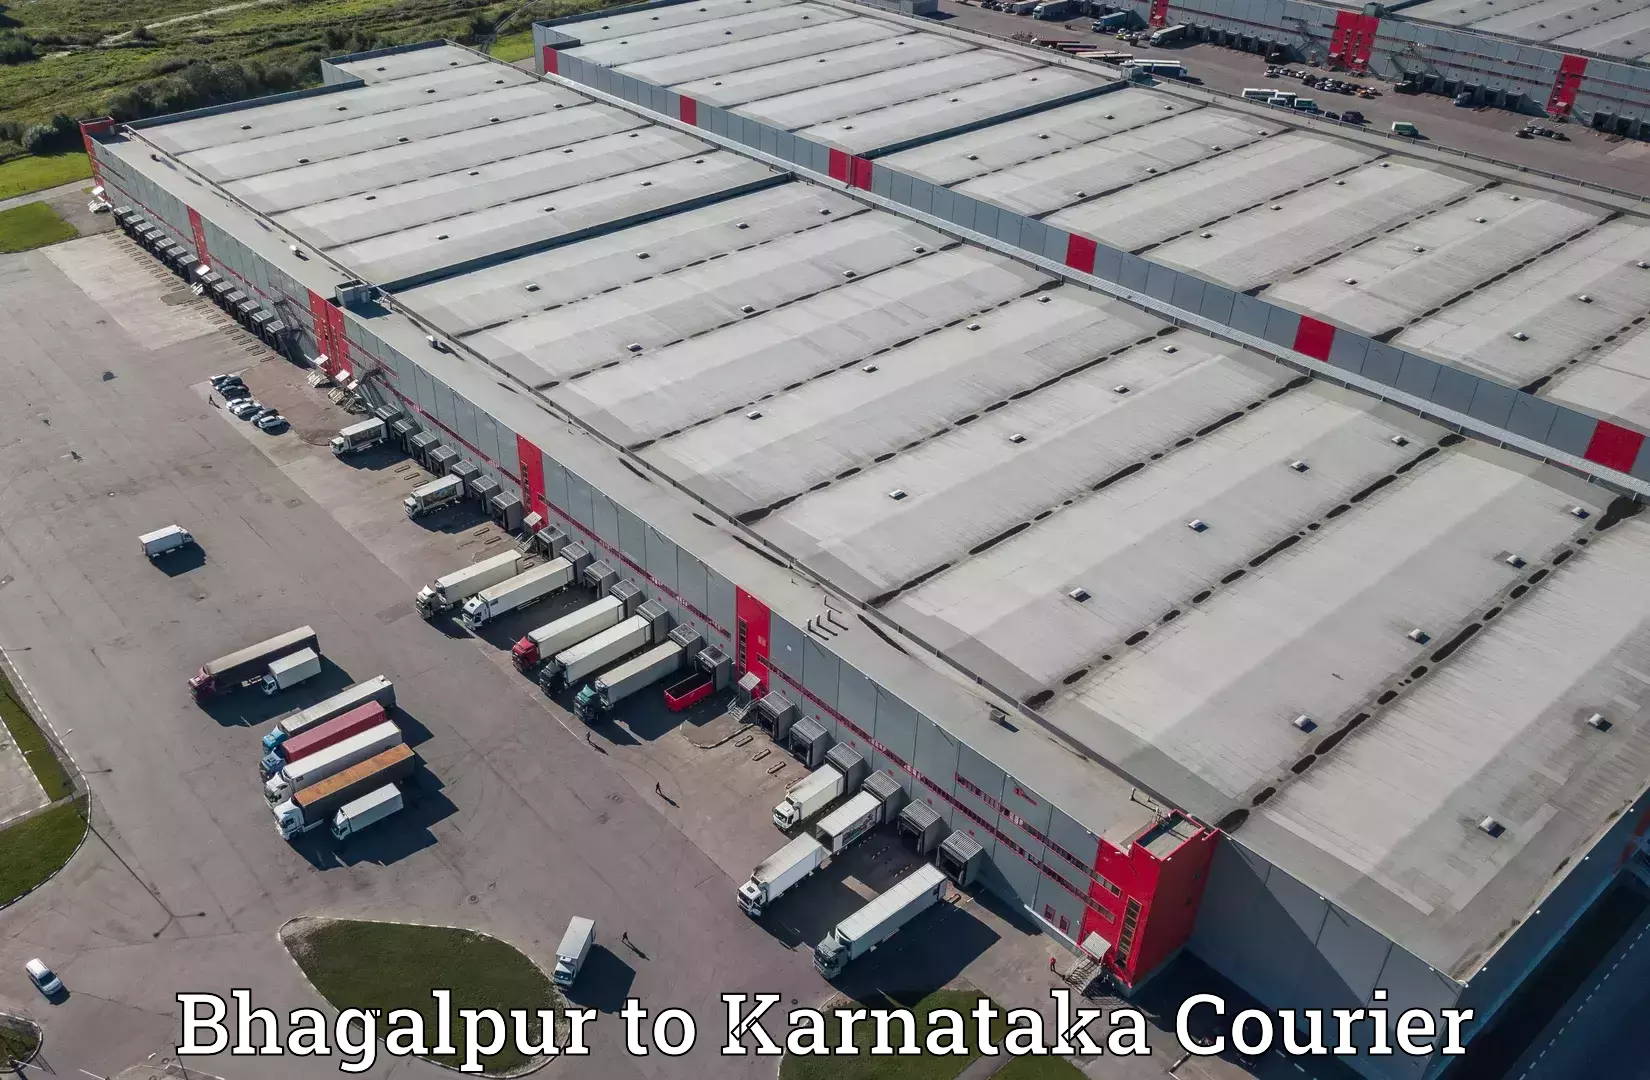 Quality courier partnerships Bhagalpur to Nagamangala